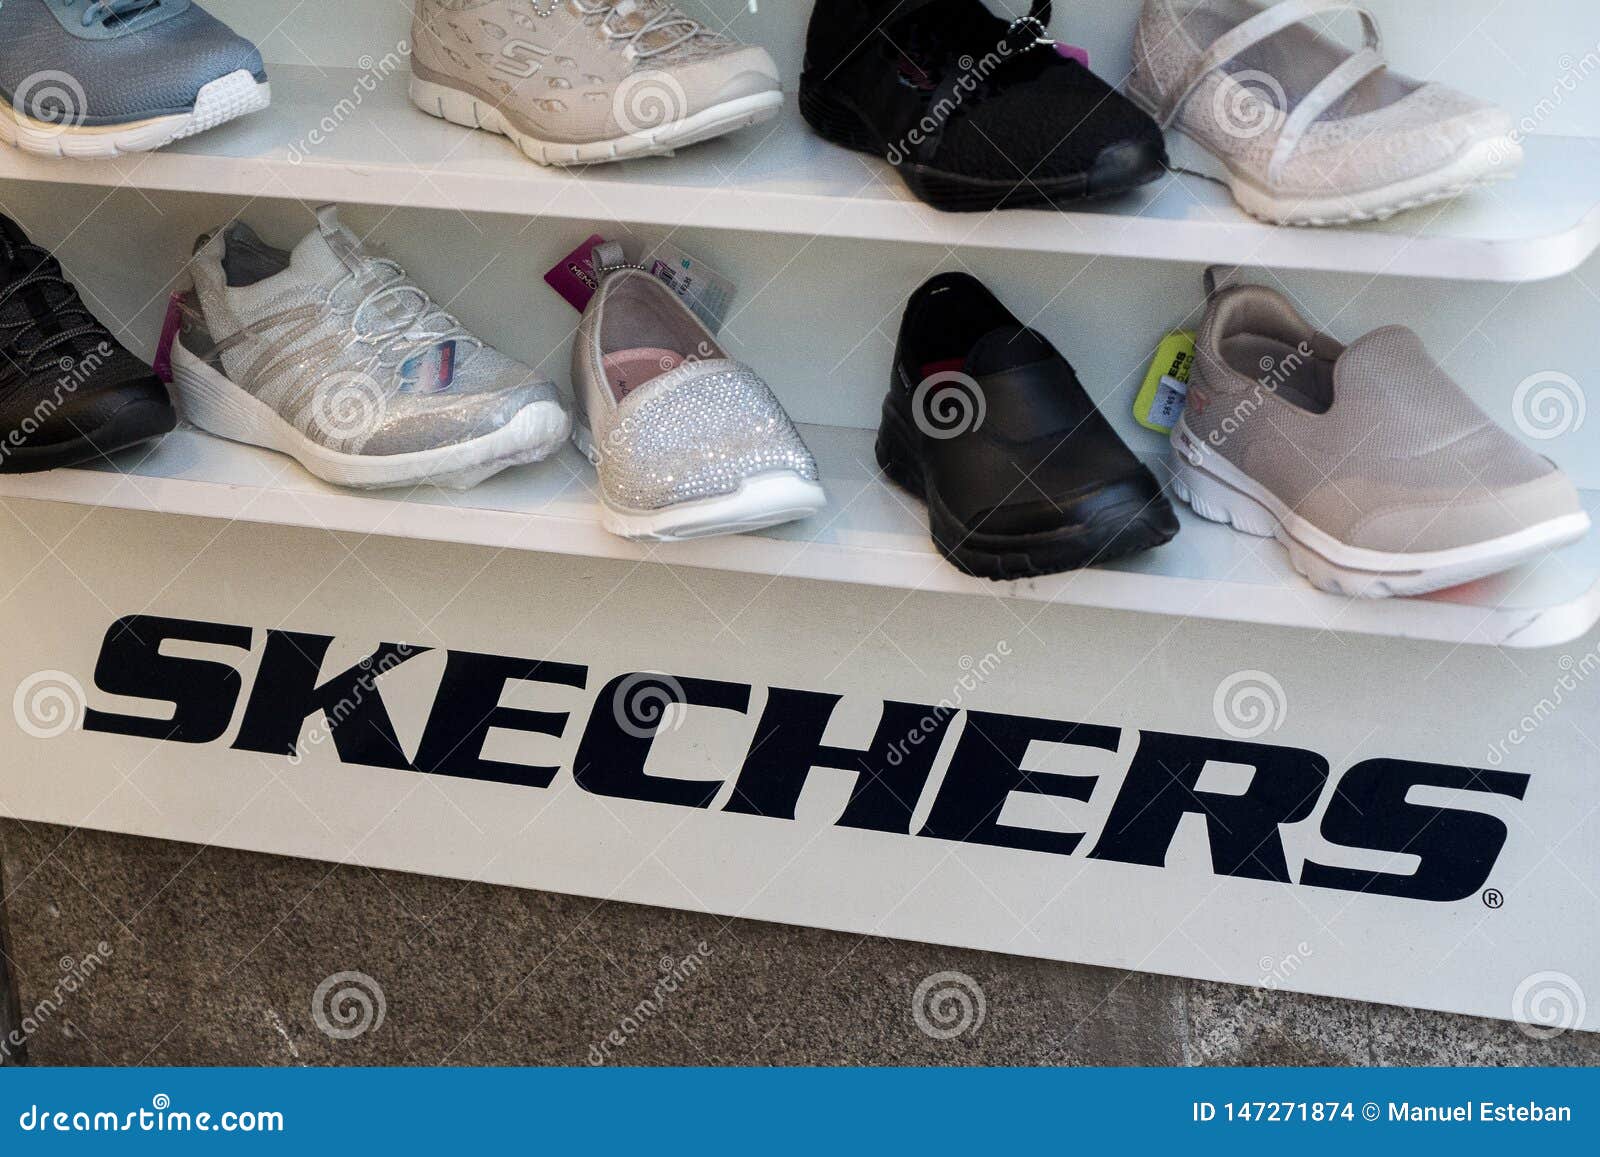 skechers american shoe